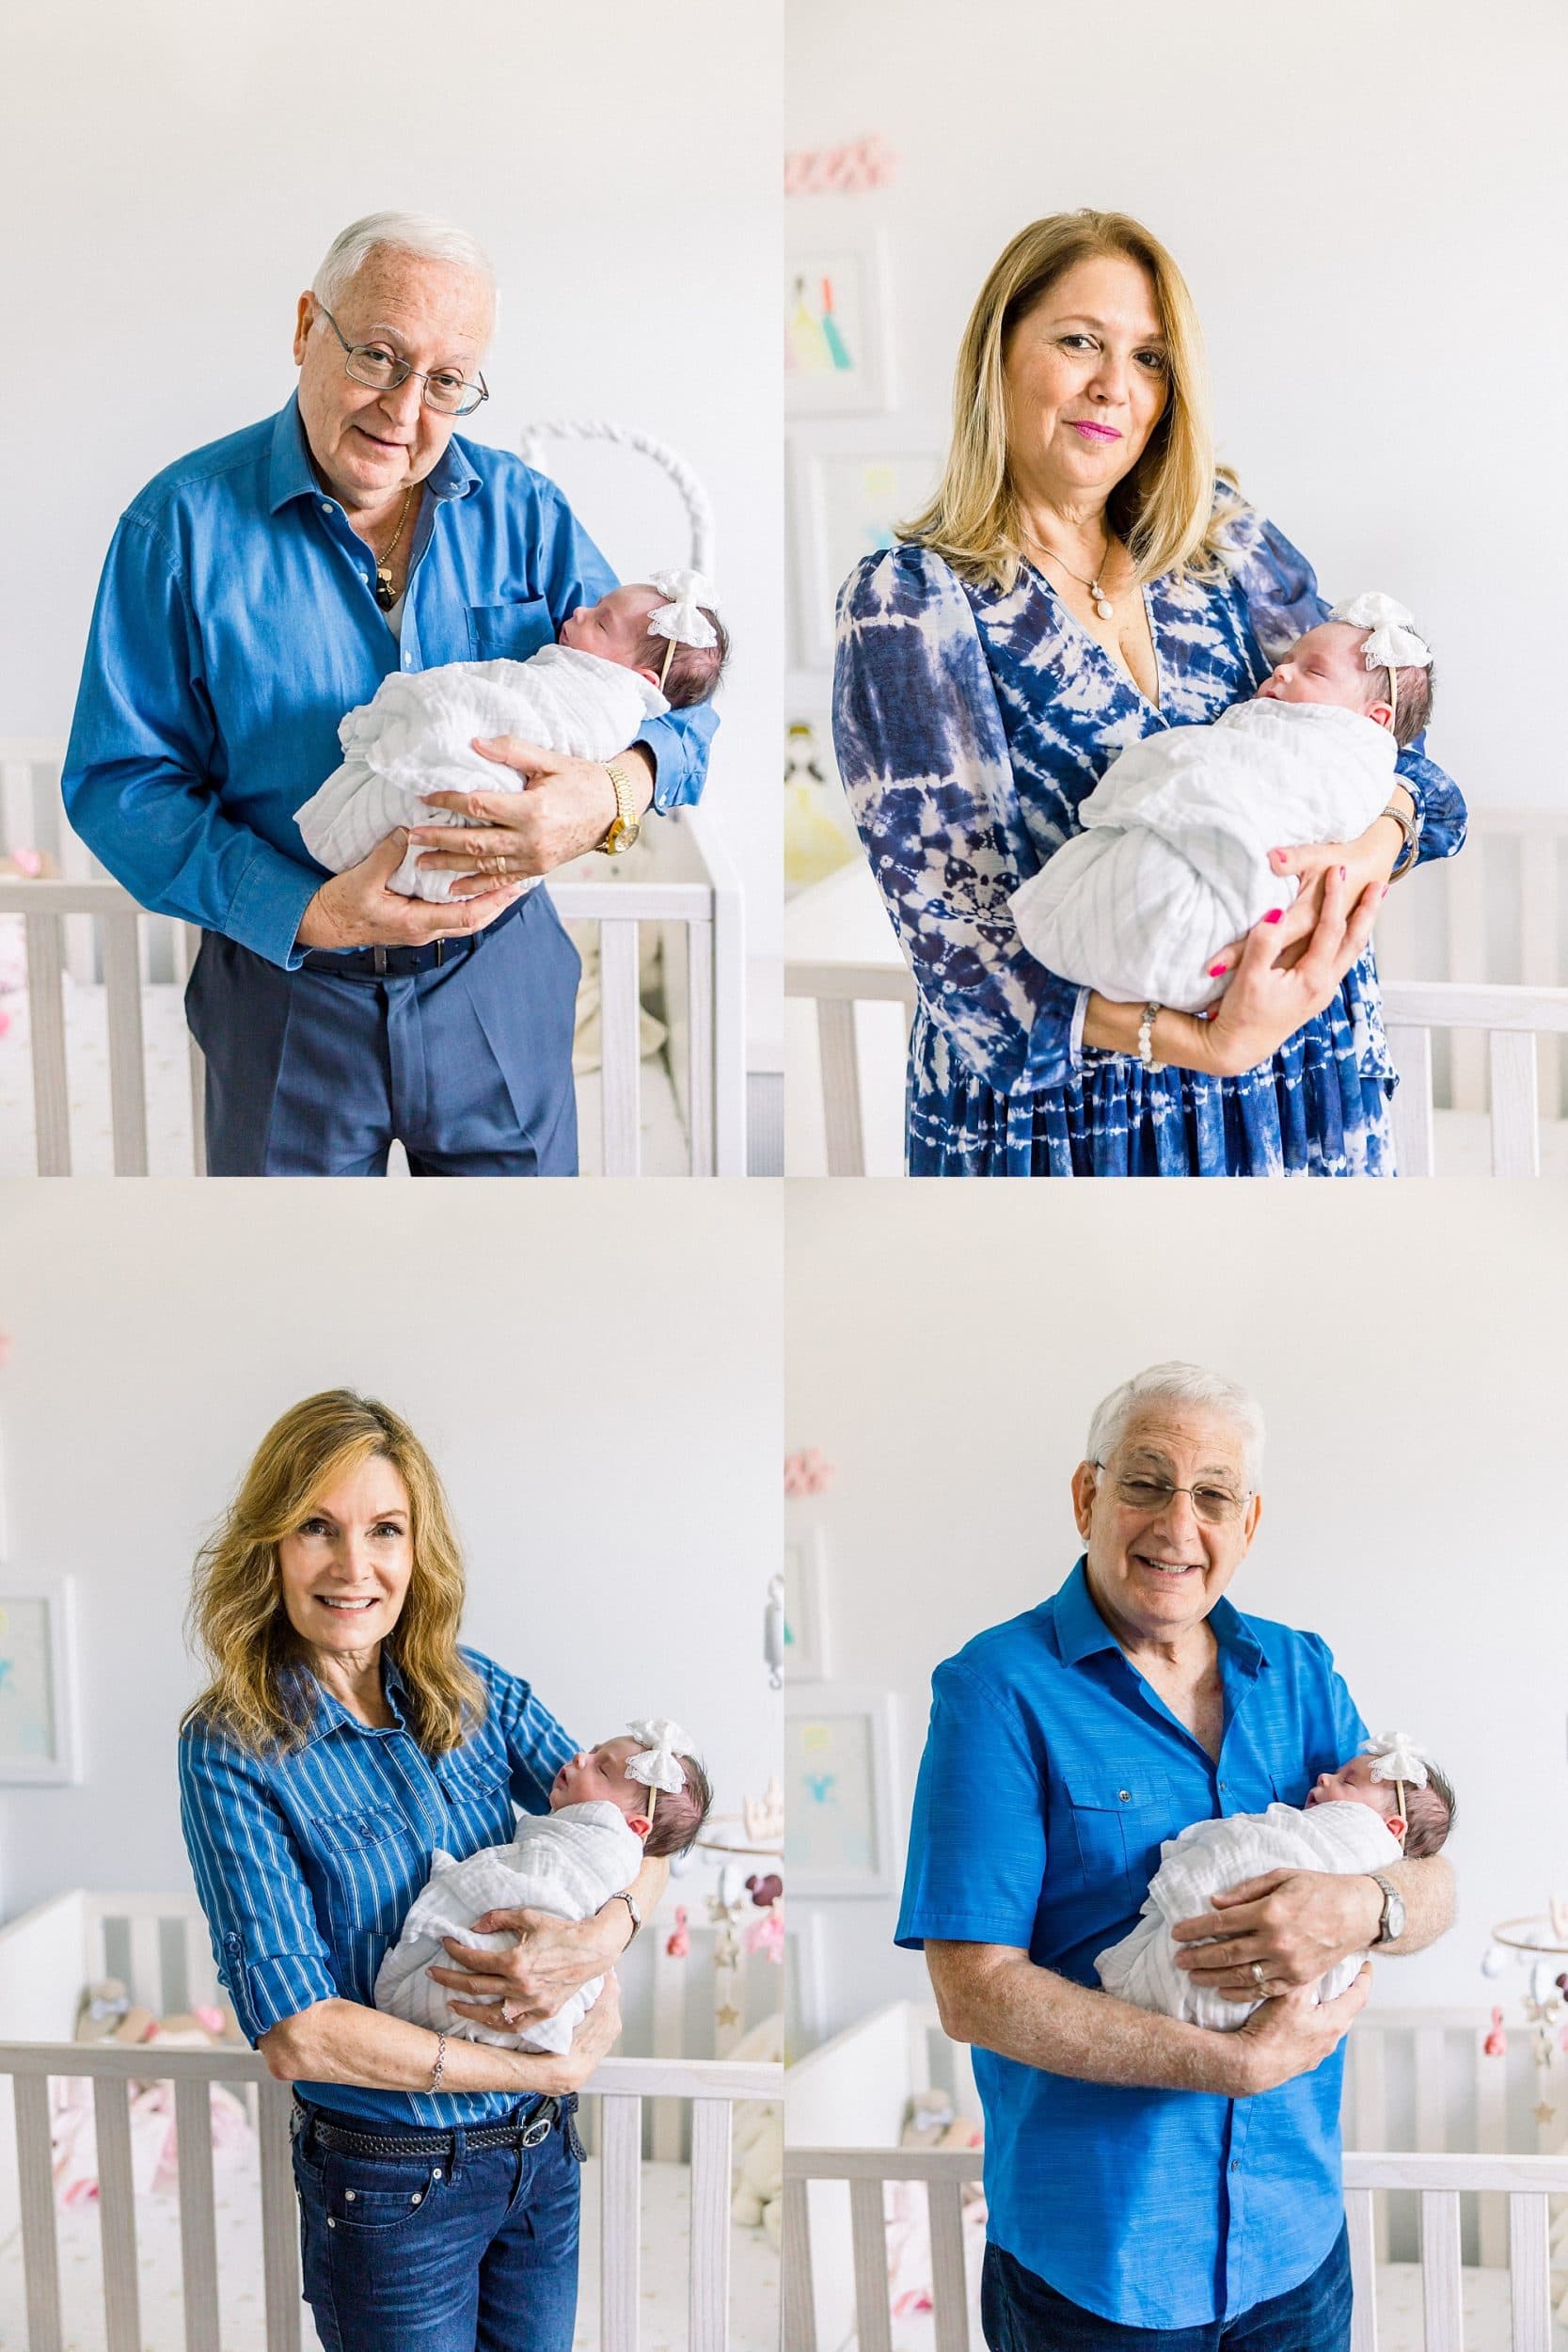 Newborn generation portraits in Miami home